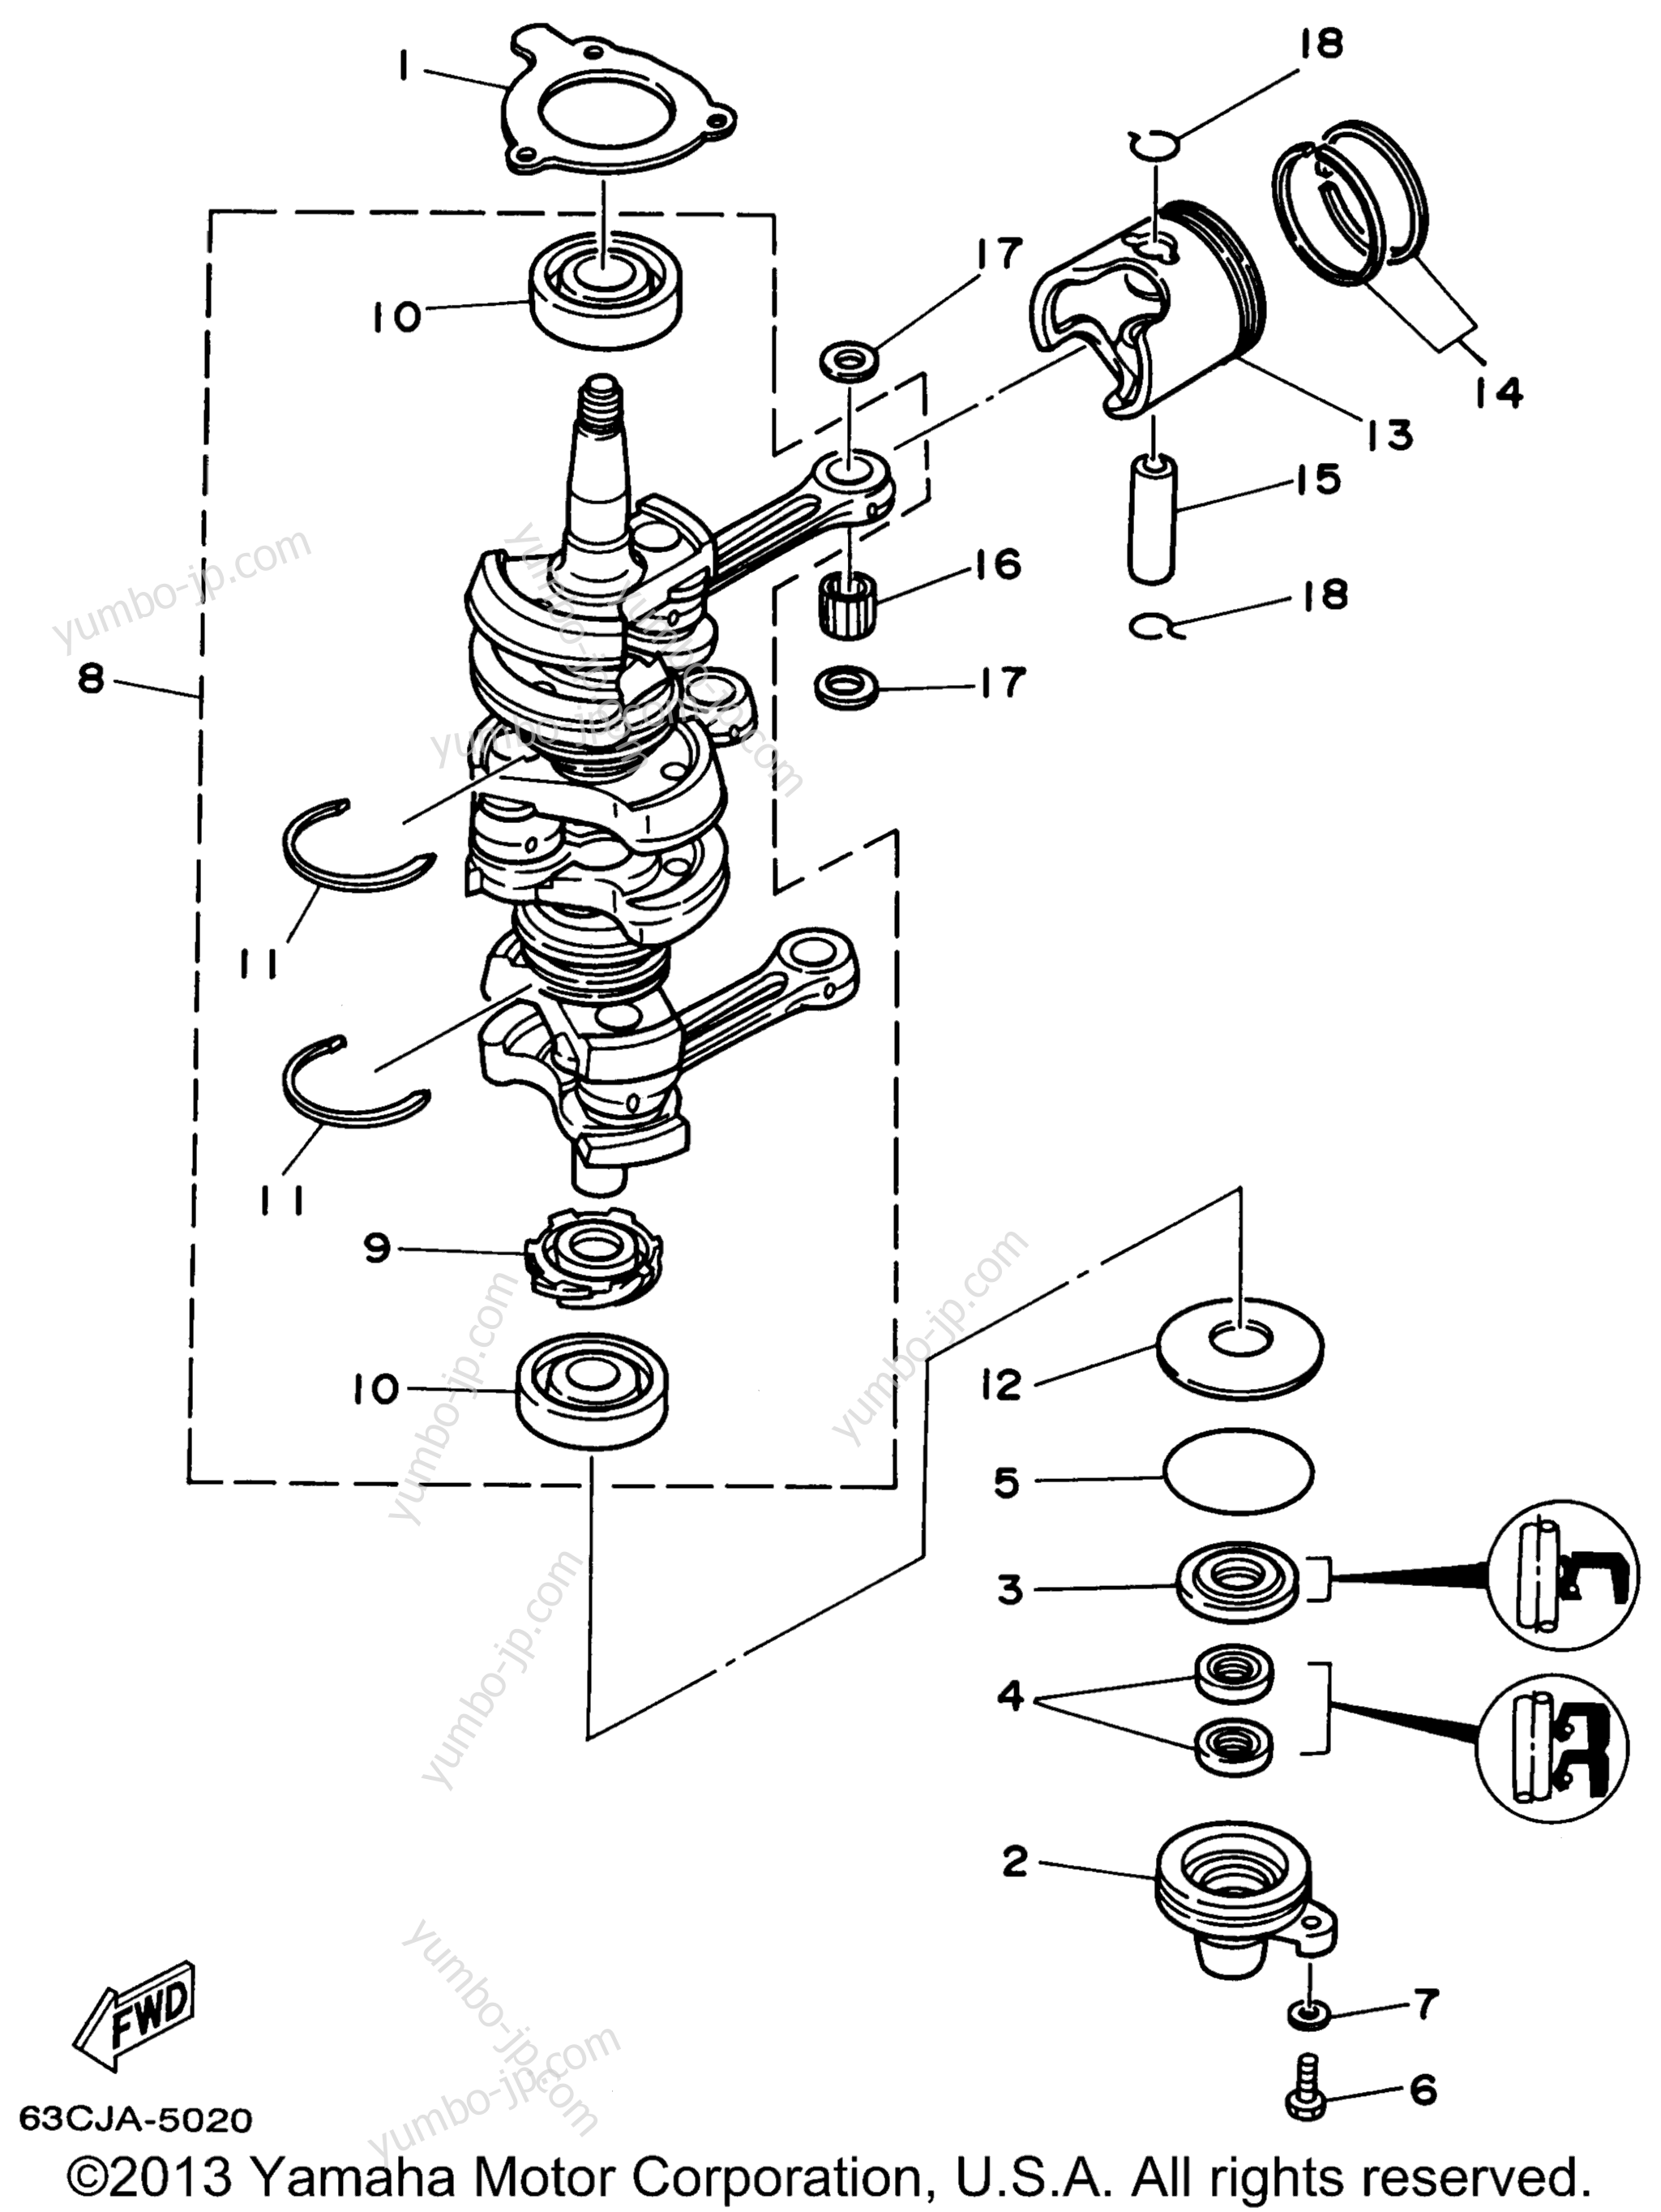 Коленвал и поршневая группа для лодочных моторов YAMAHA P40EJRW_THLW (40ELRW) 1998 г.